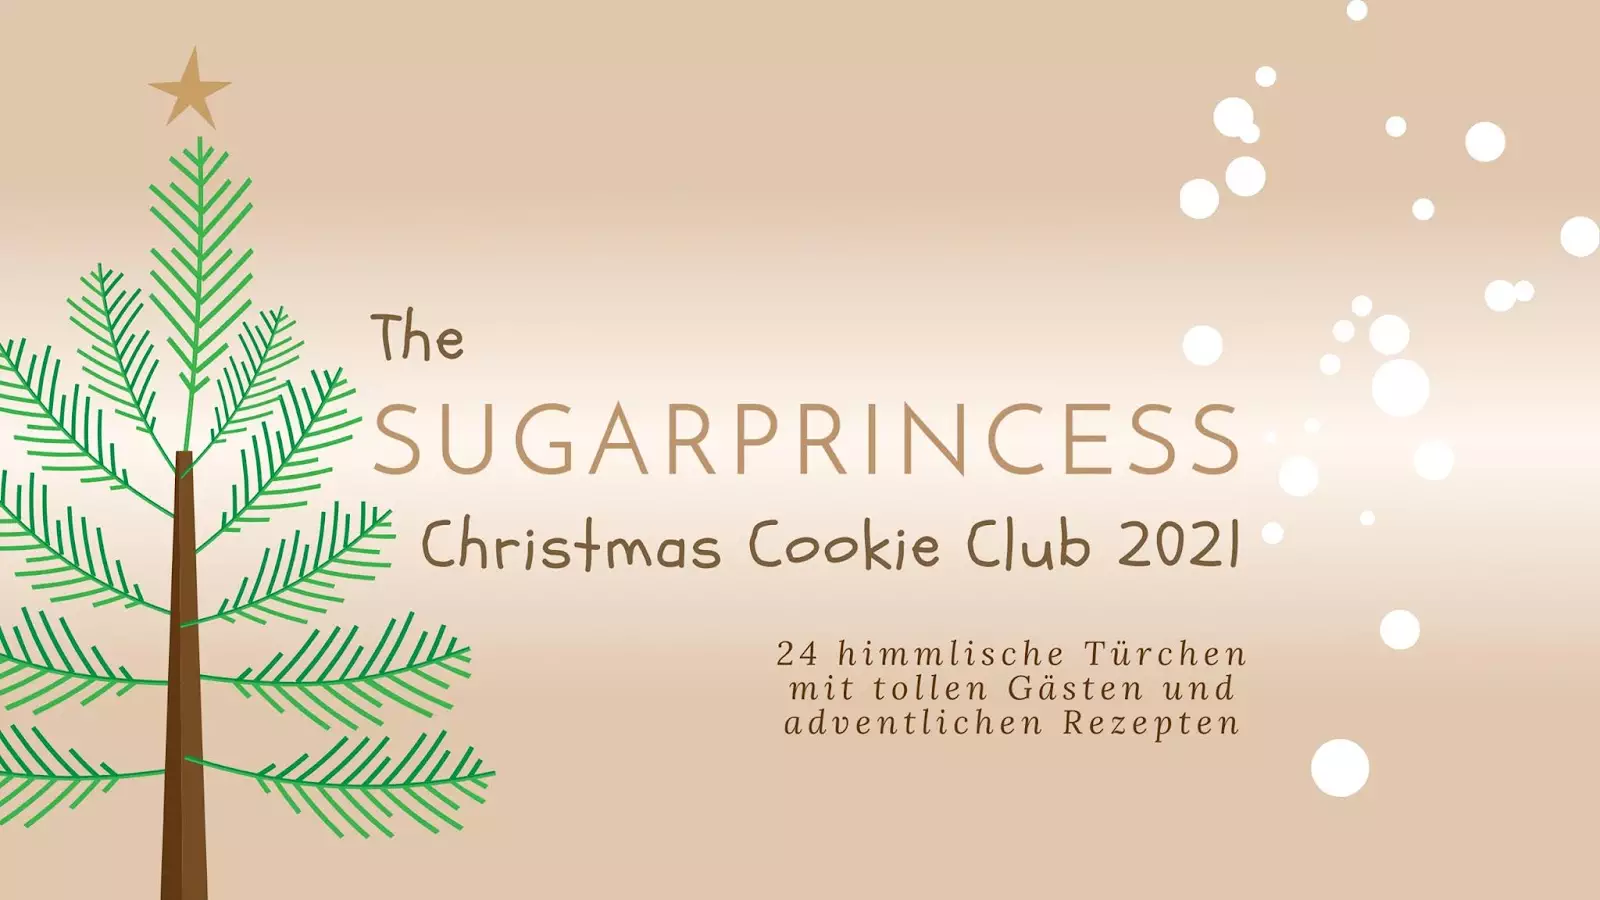 The Sugarprincess Christmas Cookie Club 2021 | Online Food-Adventskalender mit Gewinnspiel